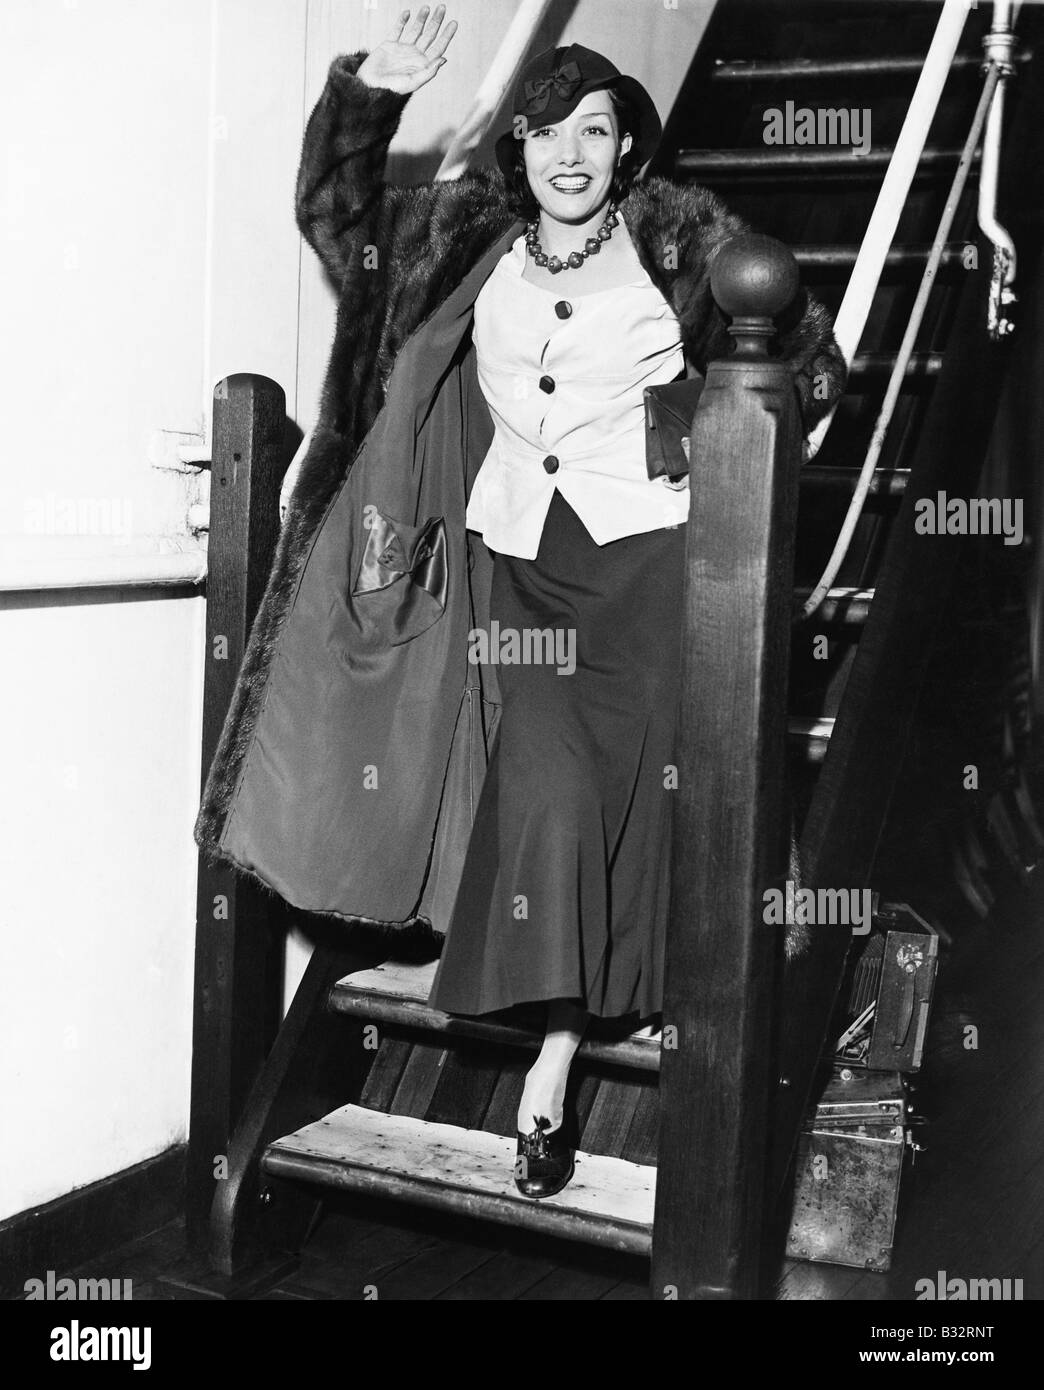 Junge Frau auf einer Treppe winken und Lächeln Stockfoto